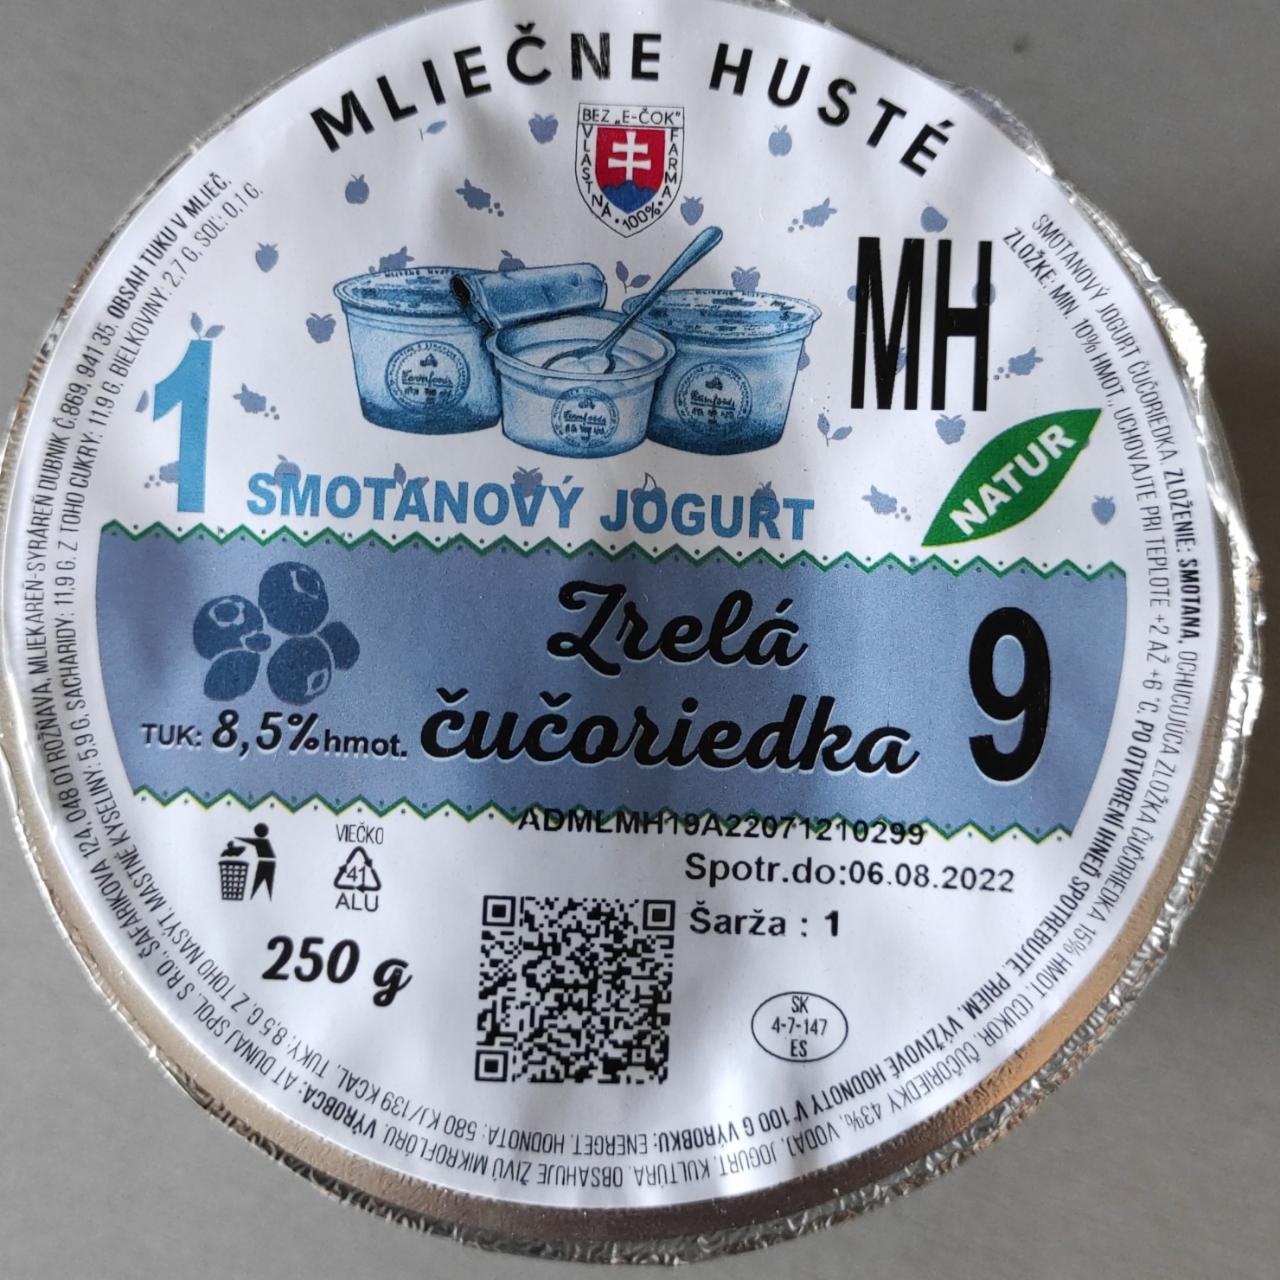 Fotografie - Smotanový jogurt Zrelá čučoriedka MH